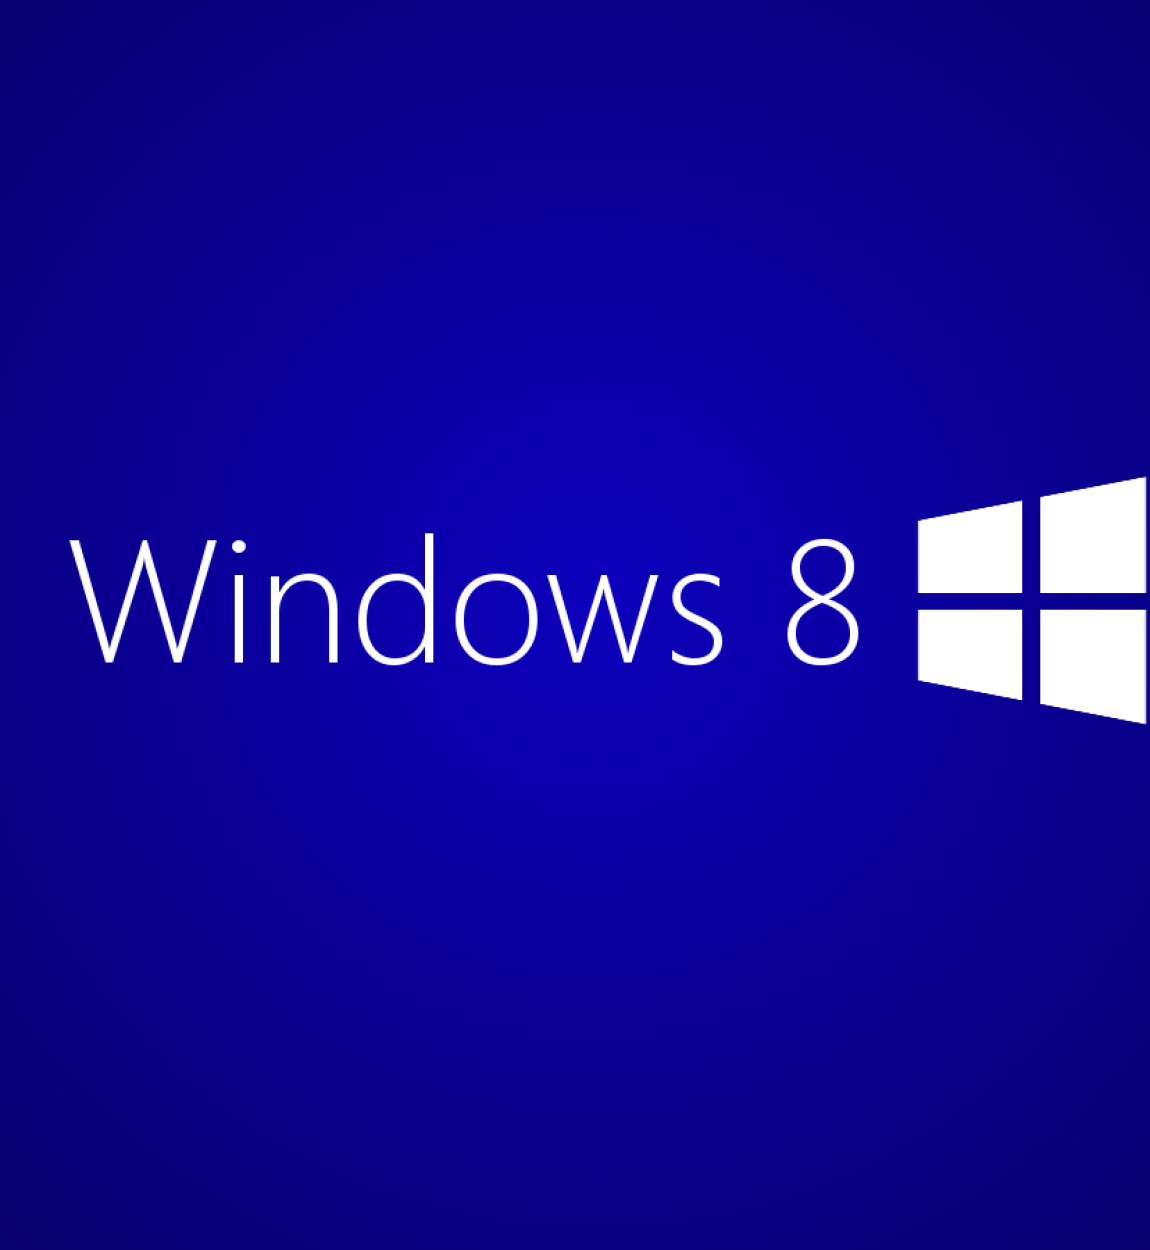 Load 8 1. Windows 8 загрузка. Загрузка виндовс. Запуск виндовс 8. Виндовс 8.1.